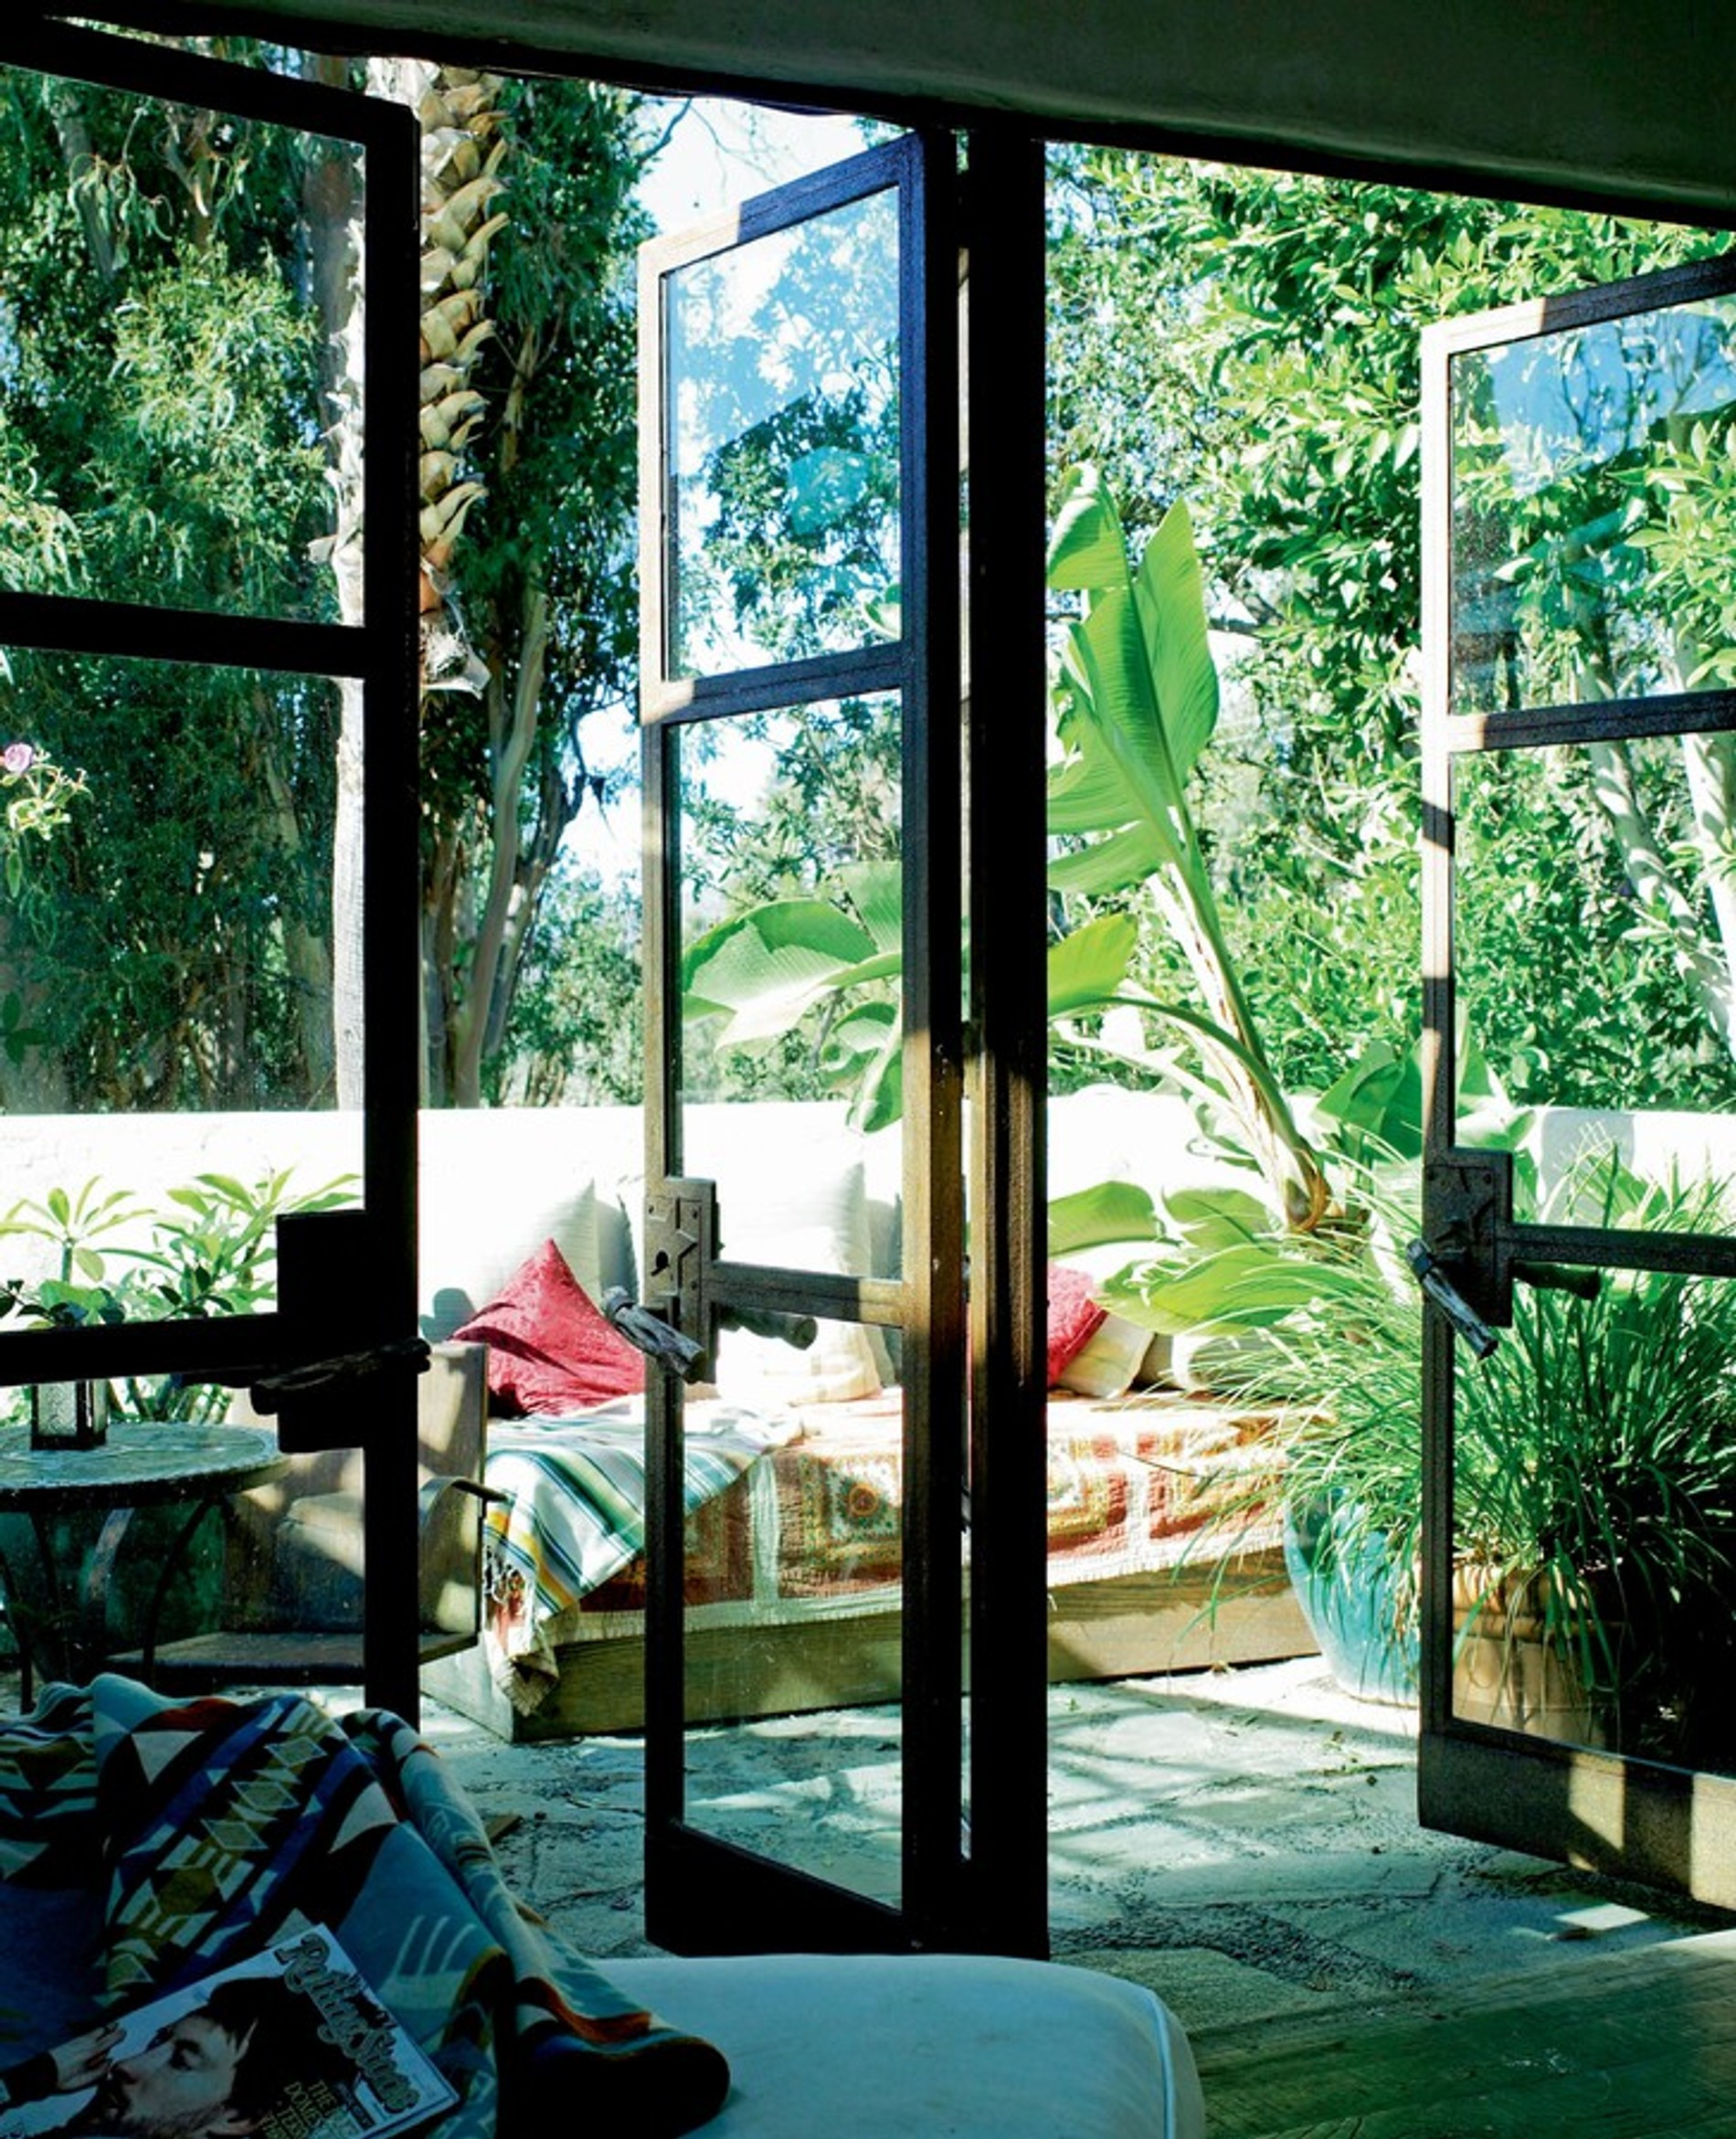 Дом Татьяны Патитц в Калифорнии
Фото: Vogue